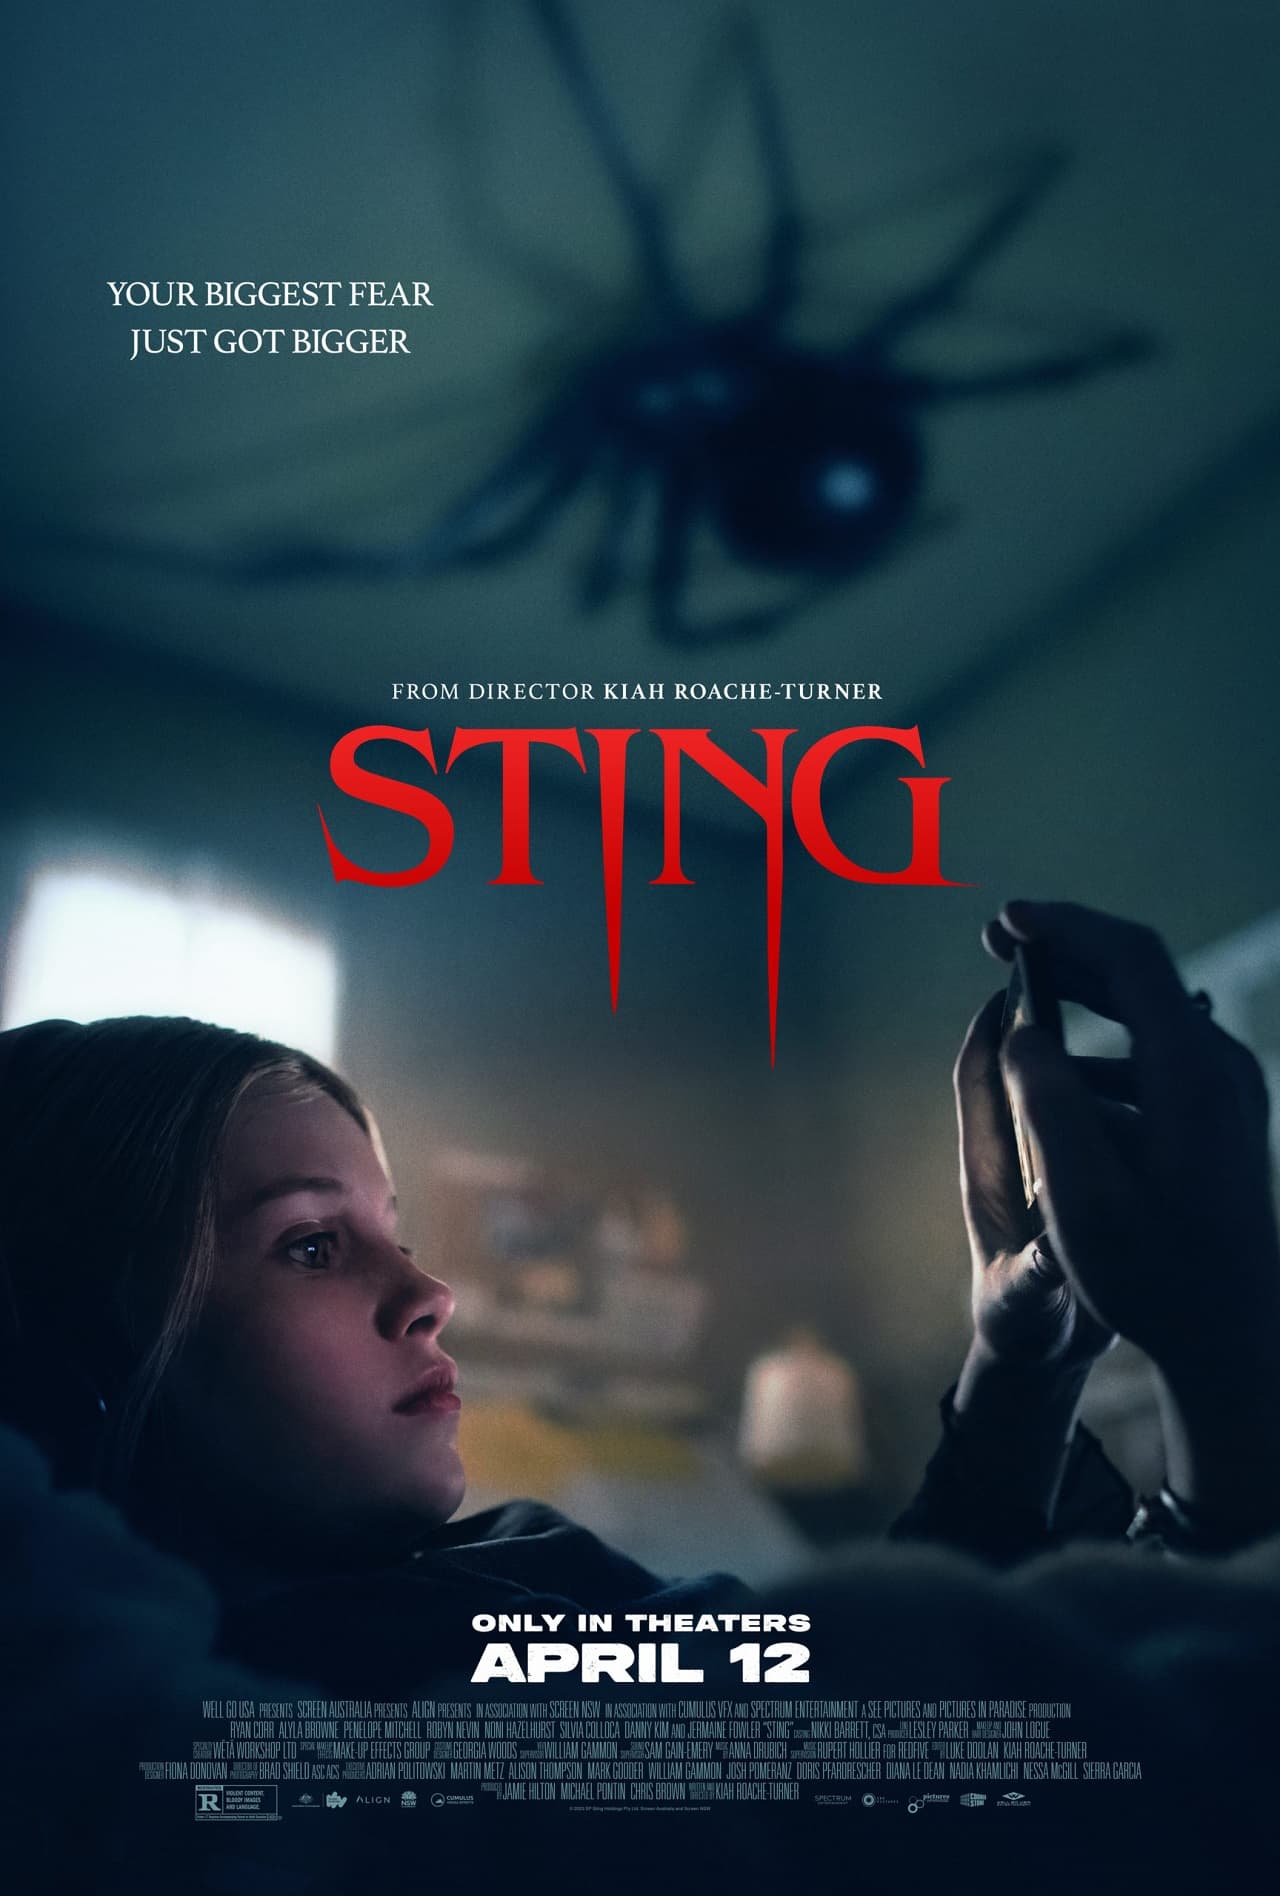 Постер фильма ужасов Sting («Укус») режиссёра зомби-хоррора «Полынь»